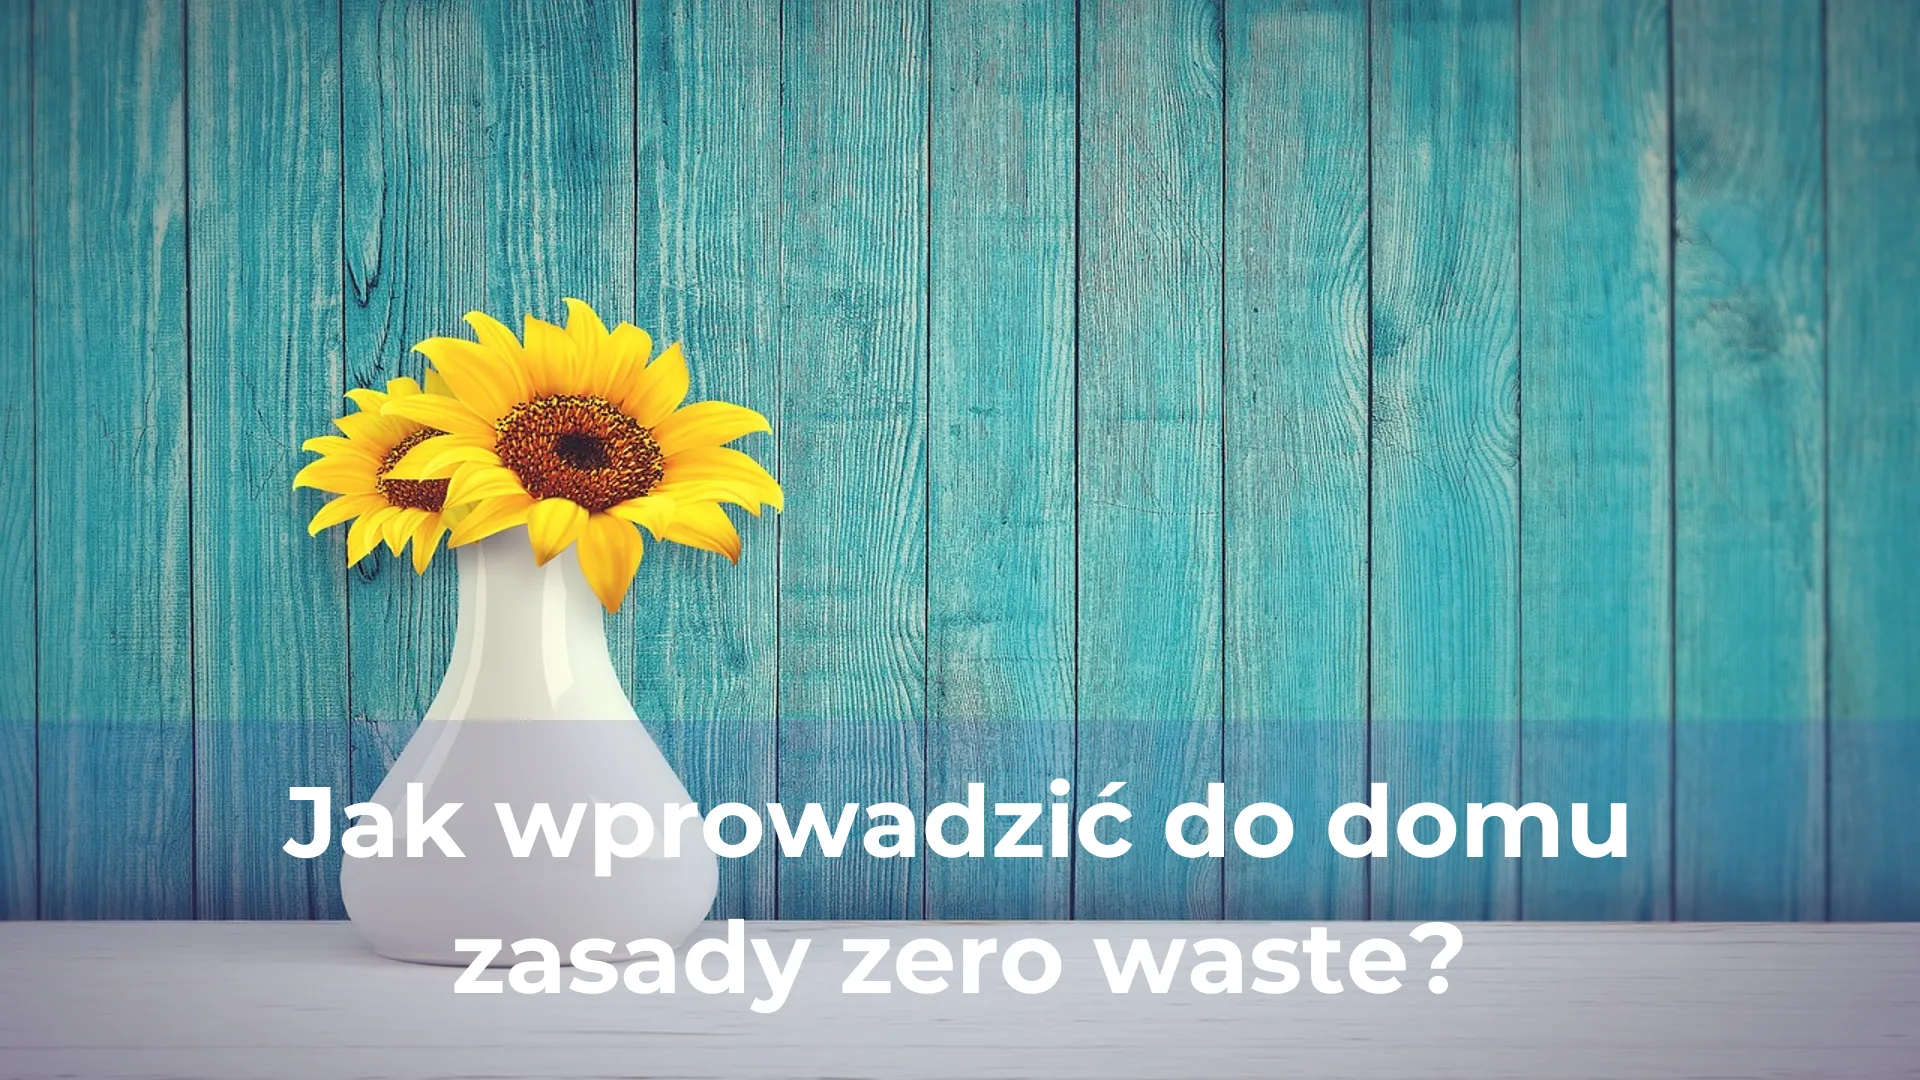 Jak wprowadzić do domu zasady zero waste